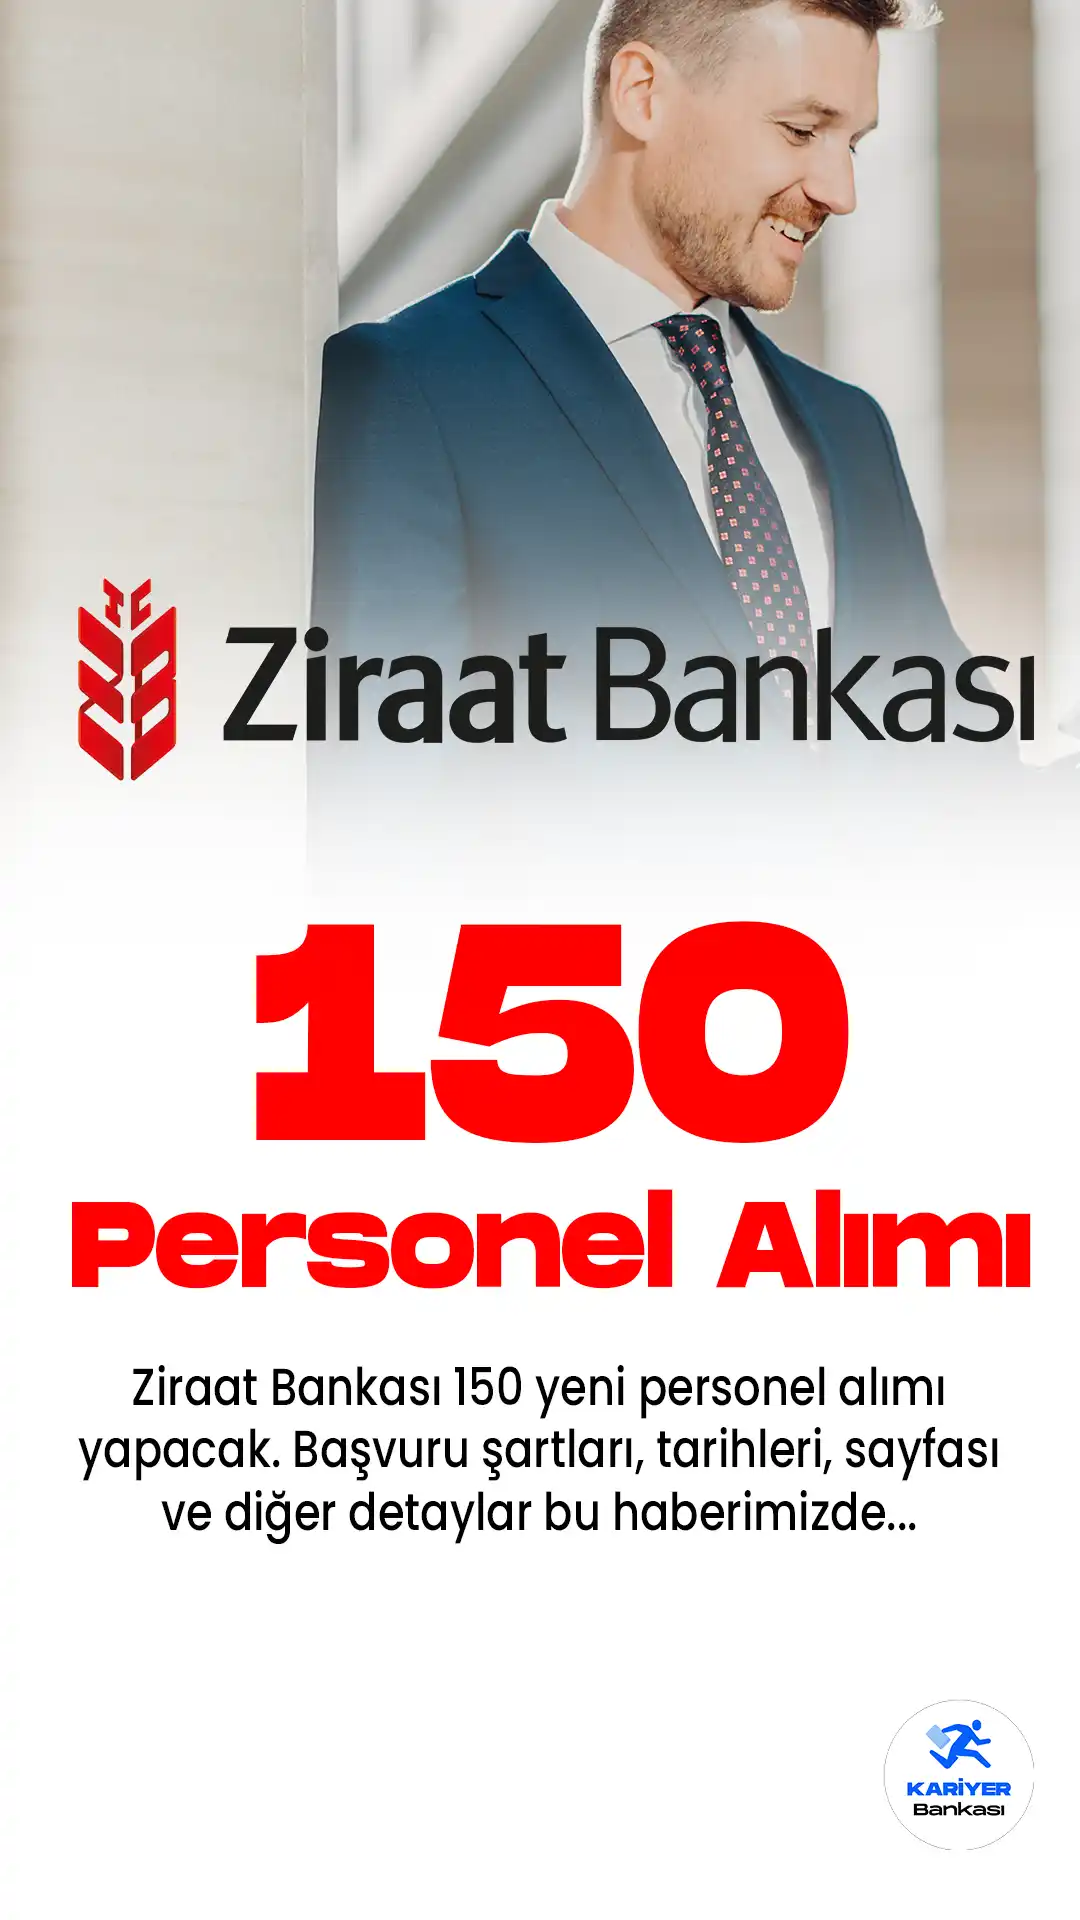 Ziraat Bankası'na 150 personel alımı için başvuru işlemleri devam ediyor. İlgili alım için başvurular 23 Haziran 2023 tarihine kadar sürecek.